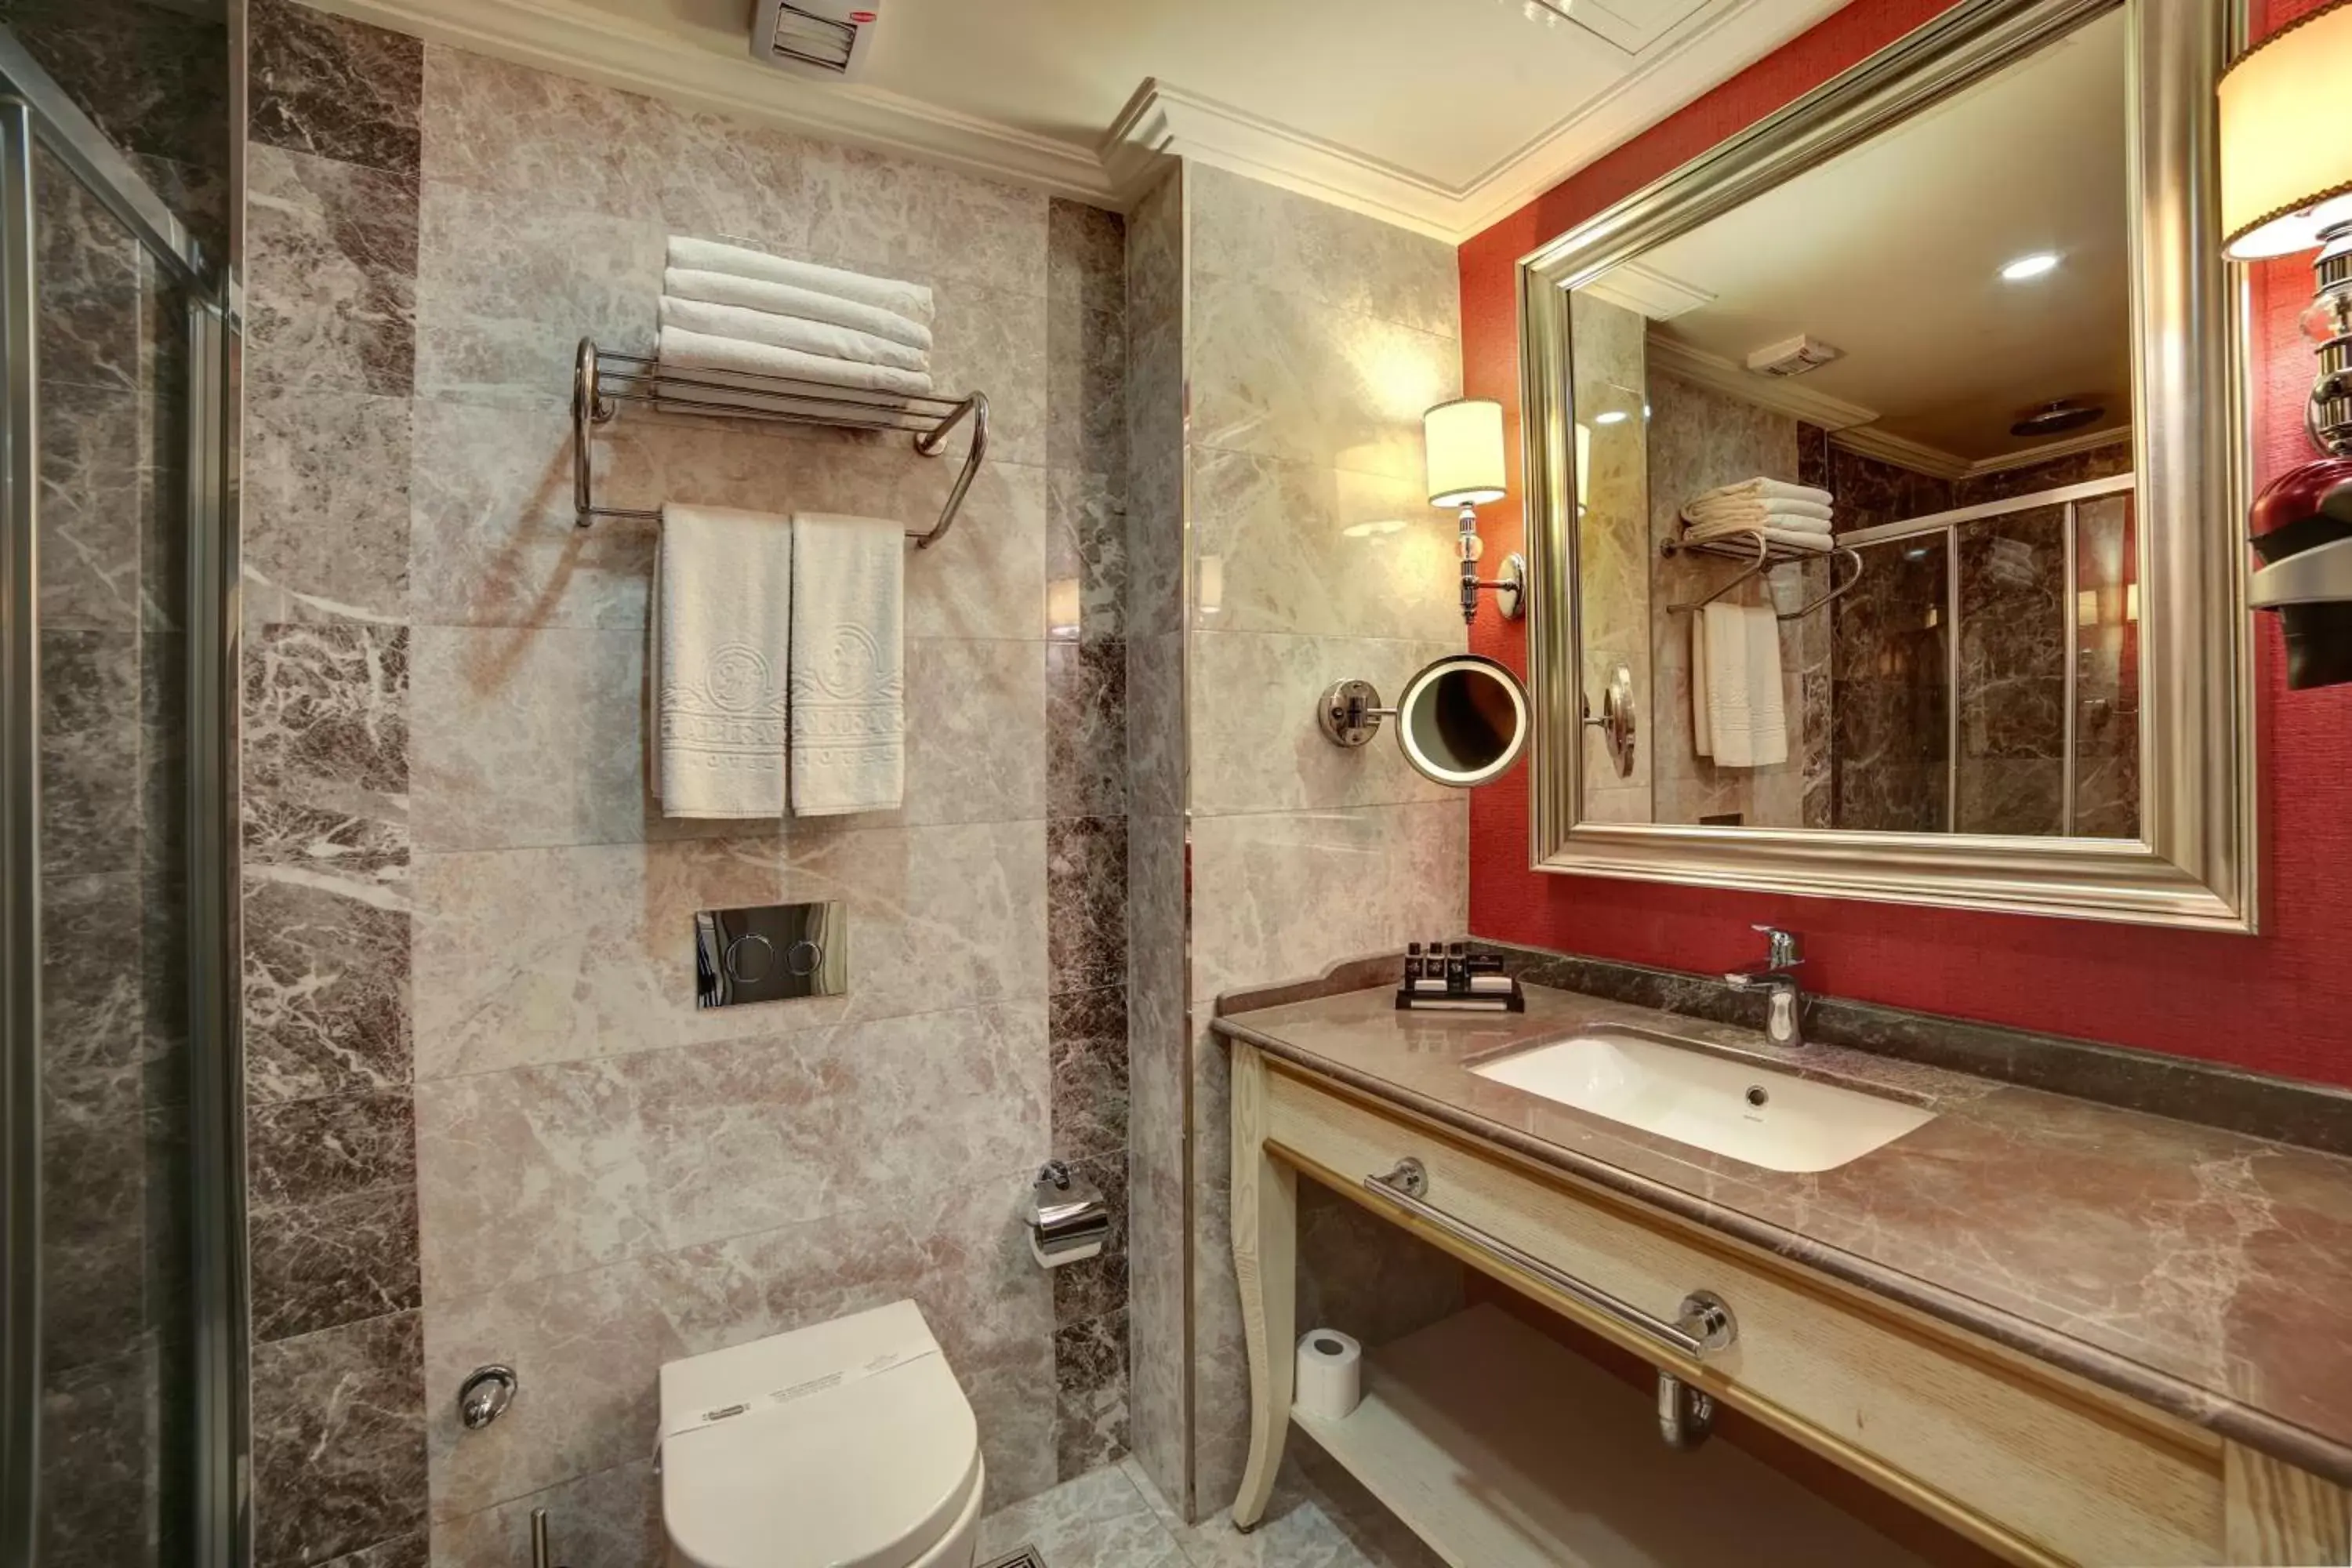 Toilet, Bathroom in Halifaks Hotel